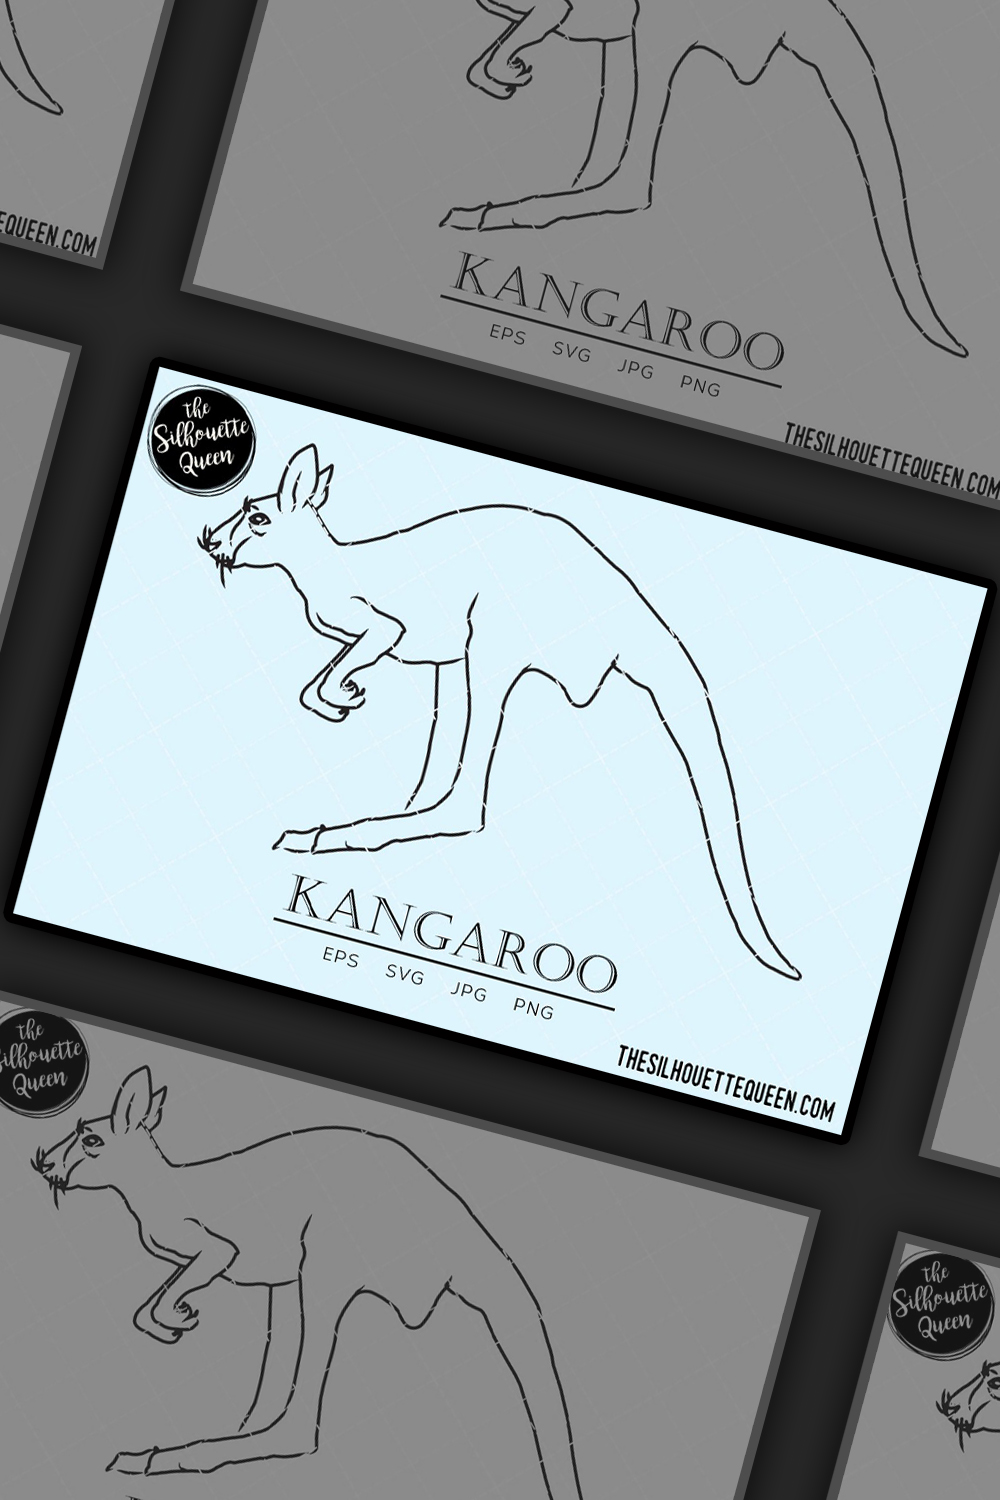 6107067 kangaroo sketch pinterest 1000 1500 443